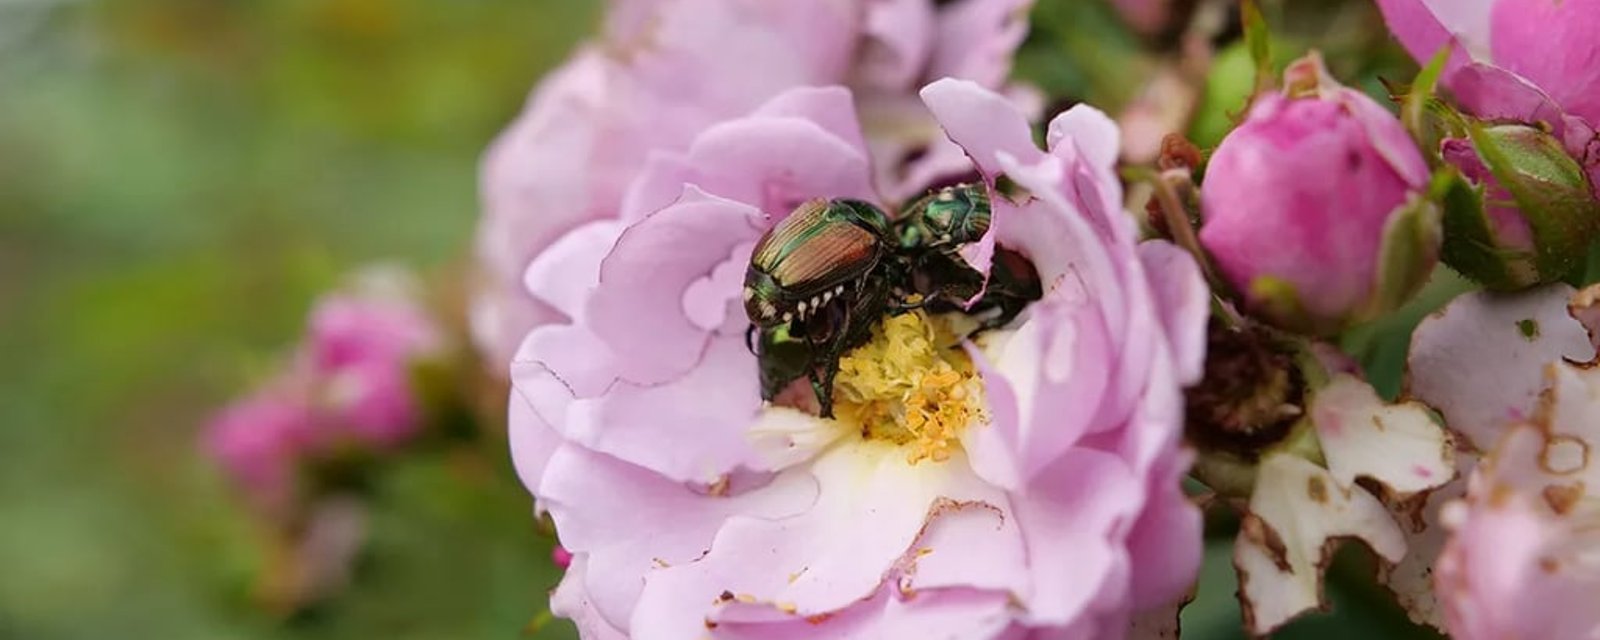 Vous avez des scarabées japonais? Cinq plantes à éviter et leurs alternatives pour votre jardin